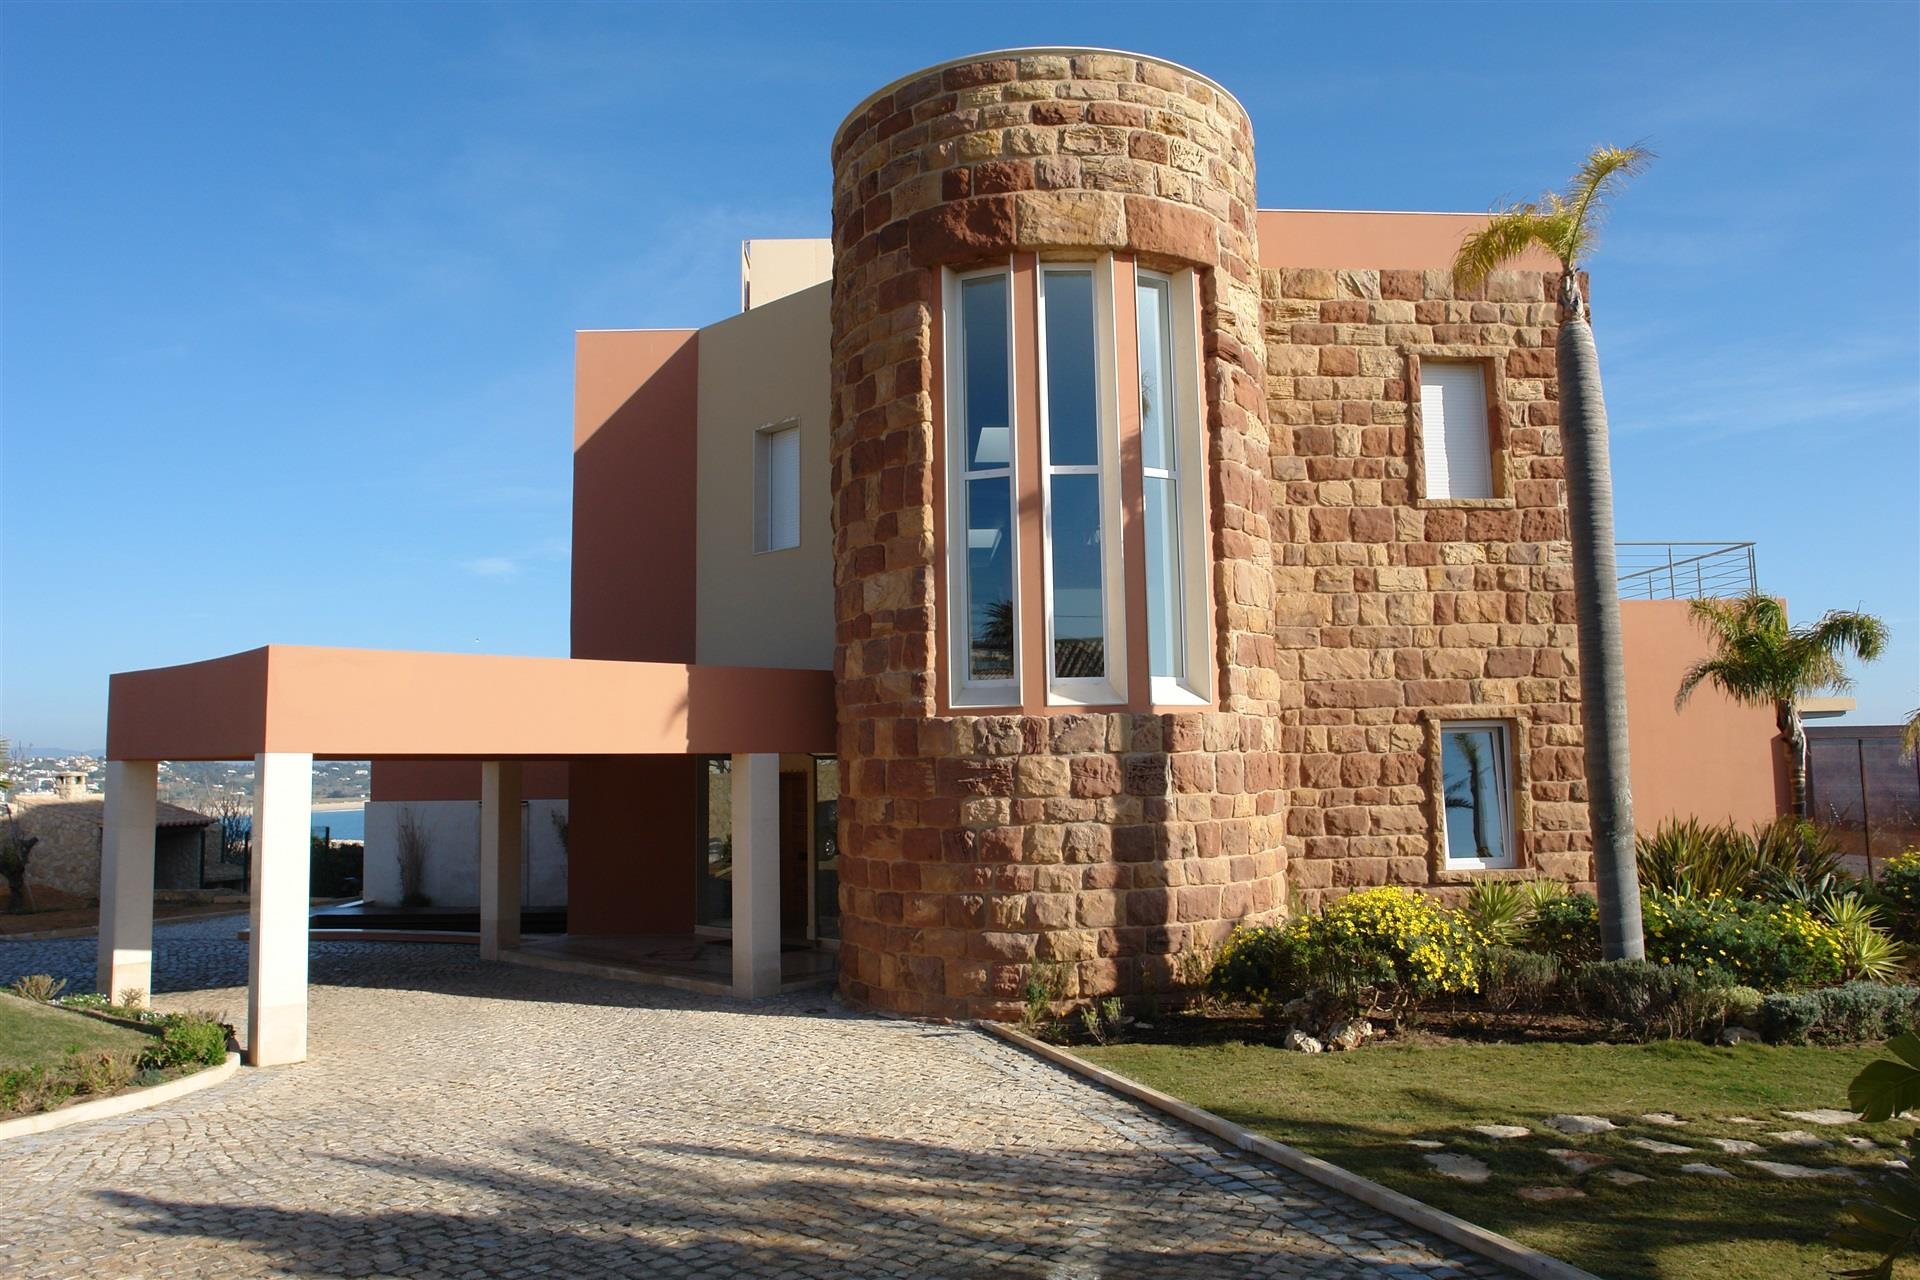 Portal Inmobiliario de Lujo en Lagos, presenta chalet exclusivo venta en Algarve, propiedad deluxe para comprar y viviendas independientes en venta en Faro.